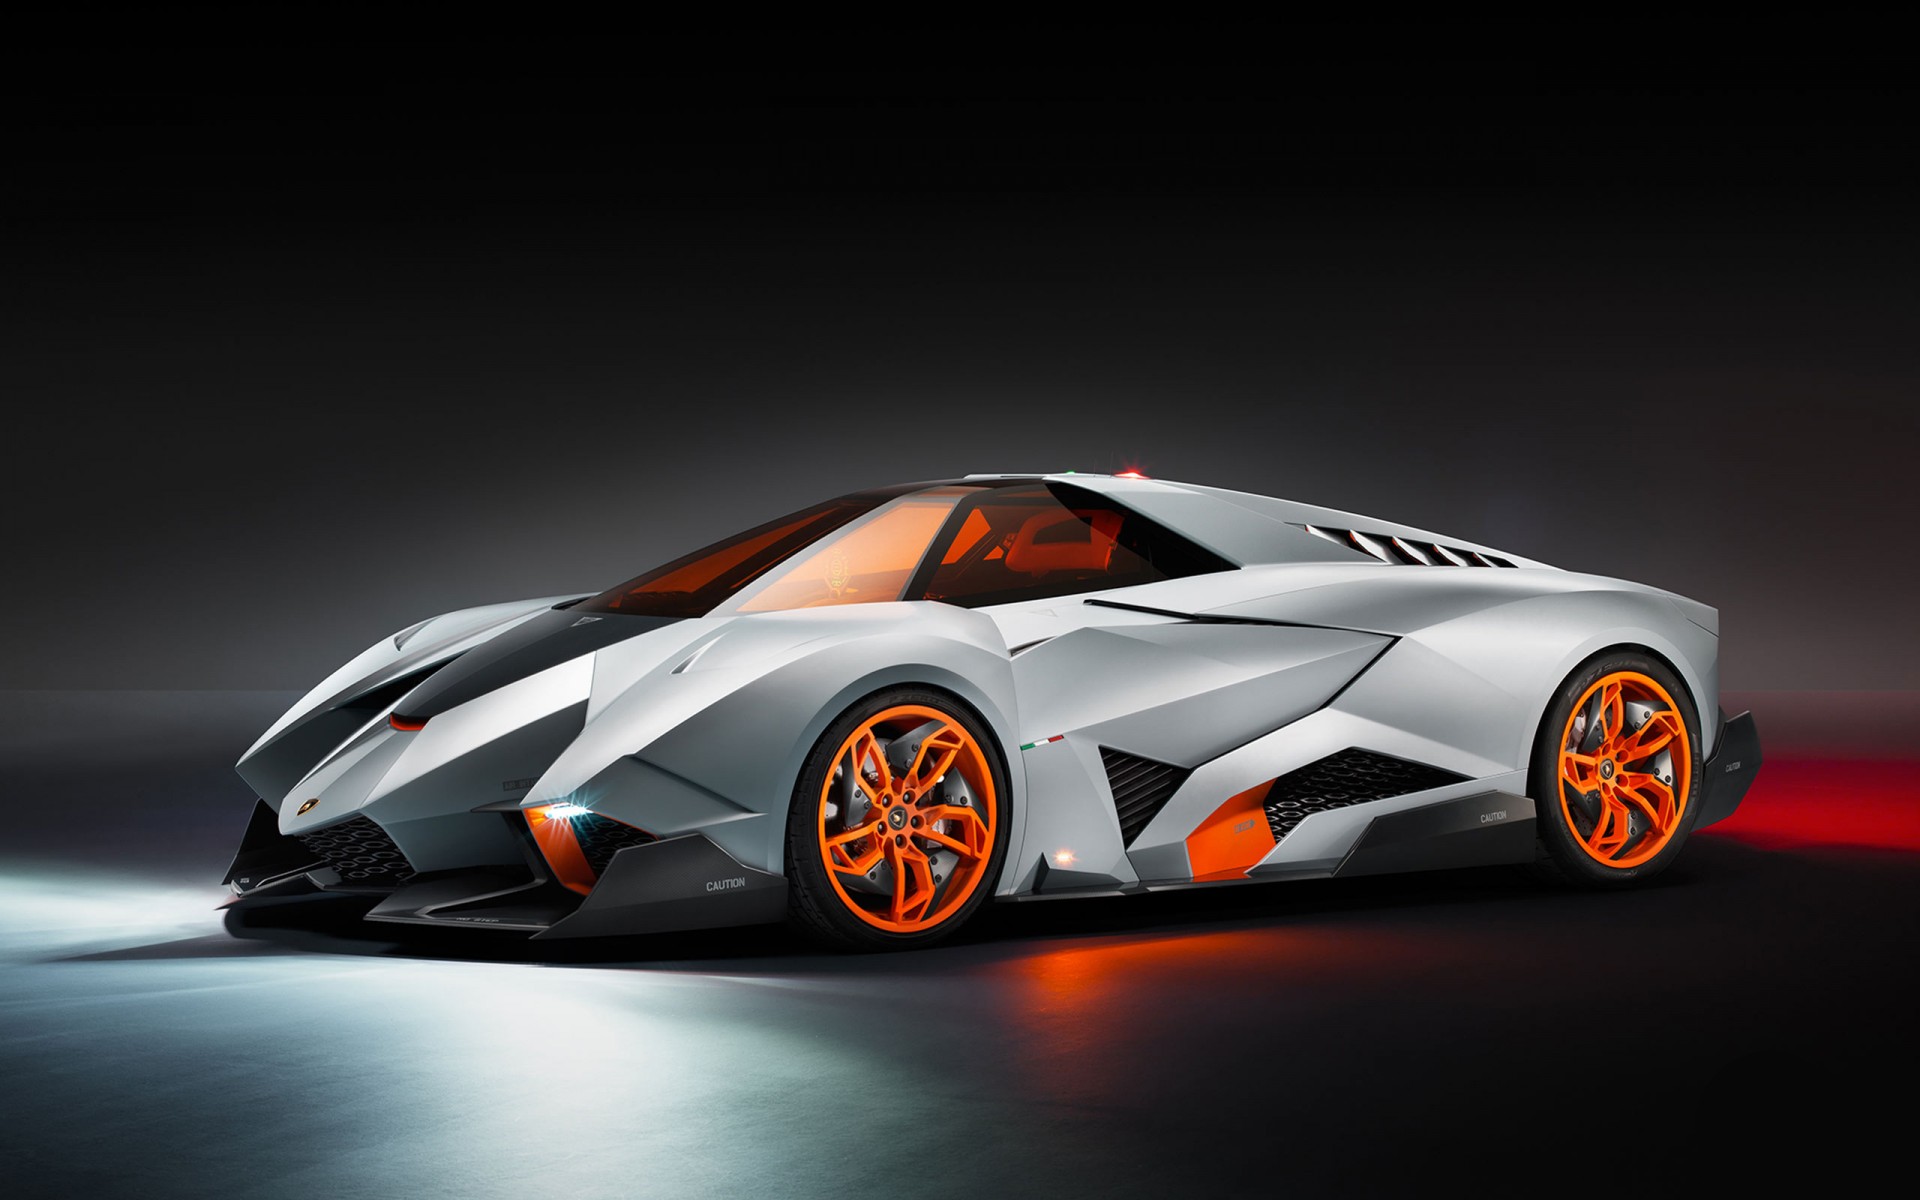 Lamborghini egoista concept car hd wallpaper â